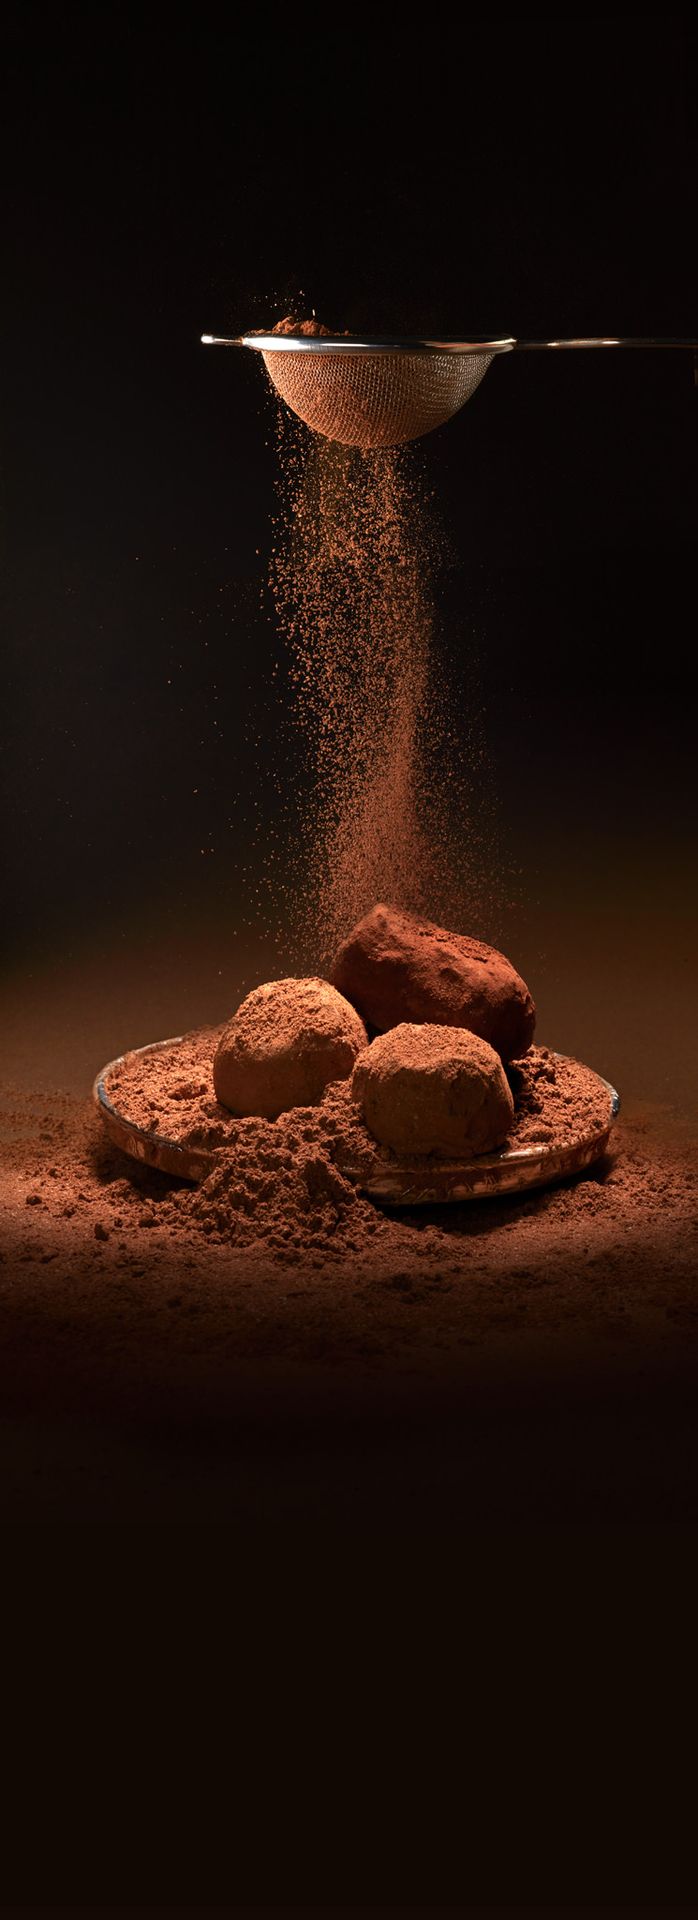 Jeff de Bruges reclamefoto truffles met cacao poeder